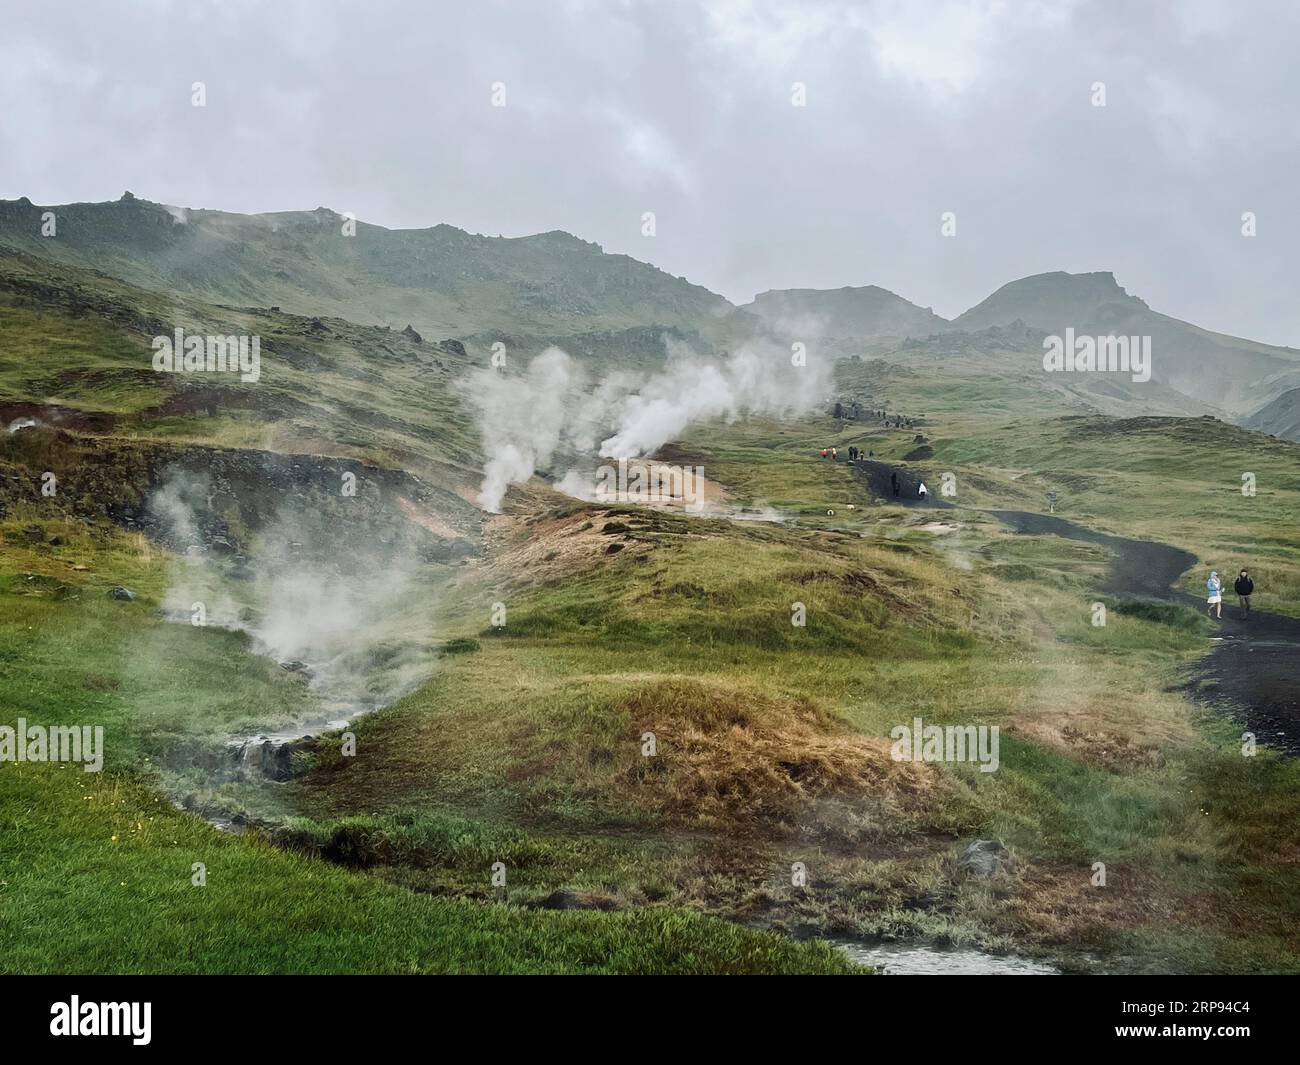 Randonnée, Reykjadalur Hot Springs (Steam Valley) est situé dans la partie sud de l'Islande. Smokey Hills serpentant les rivières et les piscines de boue visibles. Banque D'Images